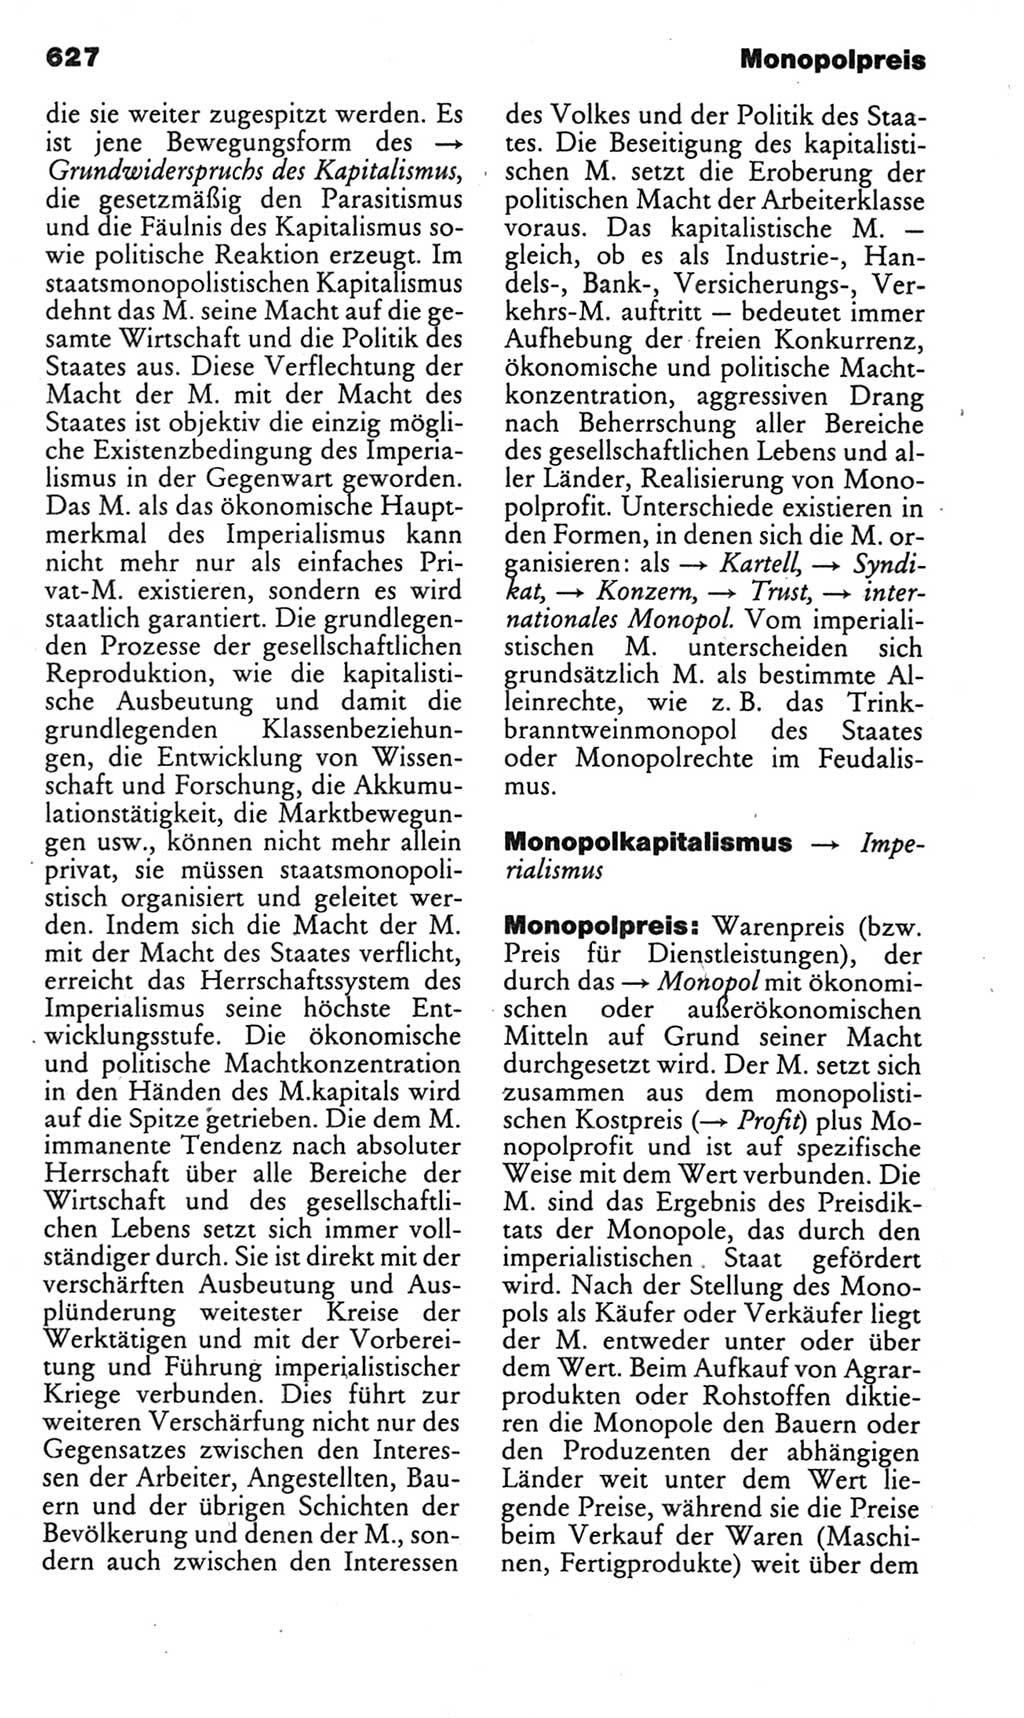 Kleines politisches Wörterbuch [Deutsche Demokratische Republik (DDR)] 1985, Seite 627 (Kl. pol. Wb. DDR 1985, S. 627)